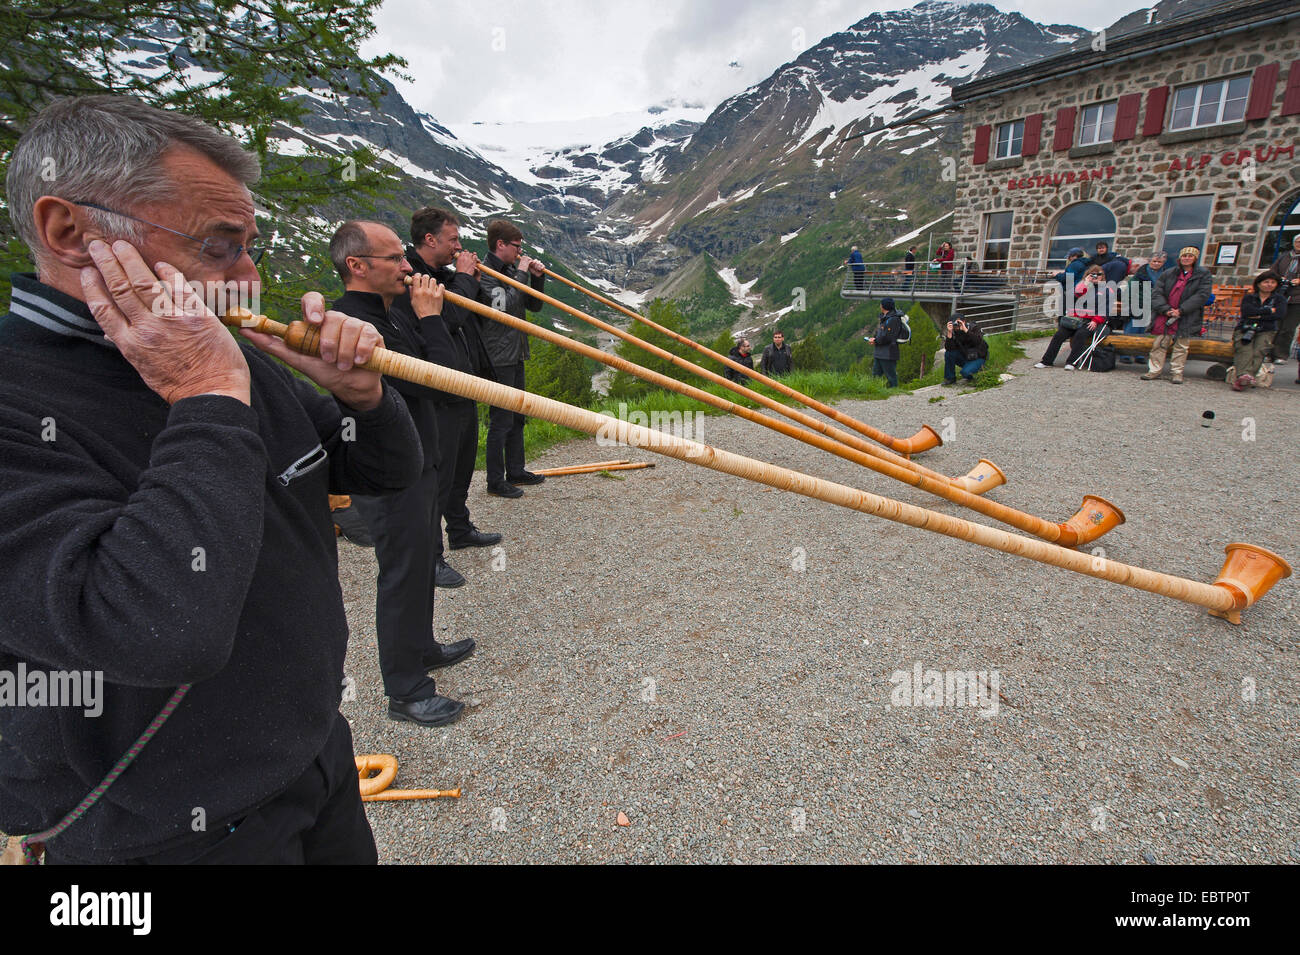 Les soufflantes de cor des alpes en face d'un paysage de mines, Suisse Banque D'Images